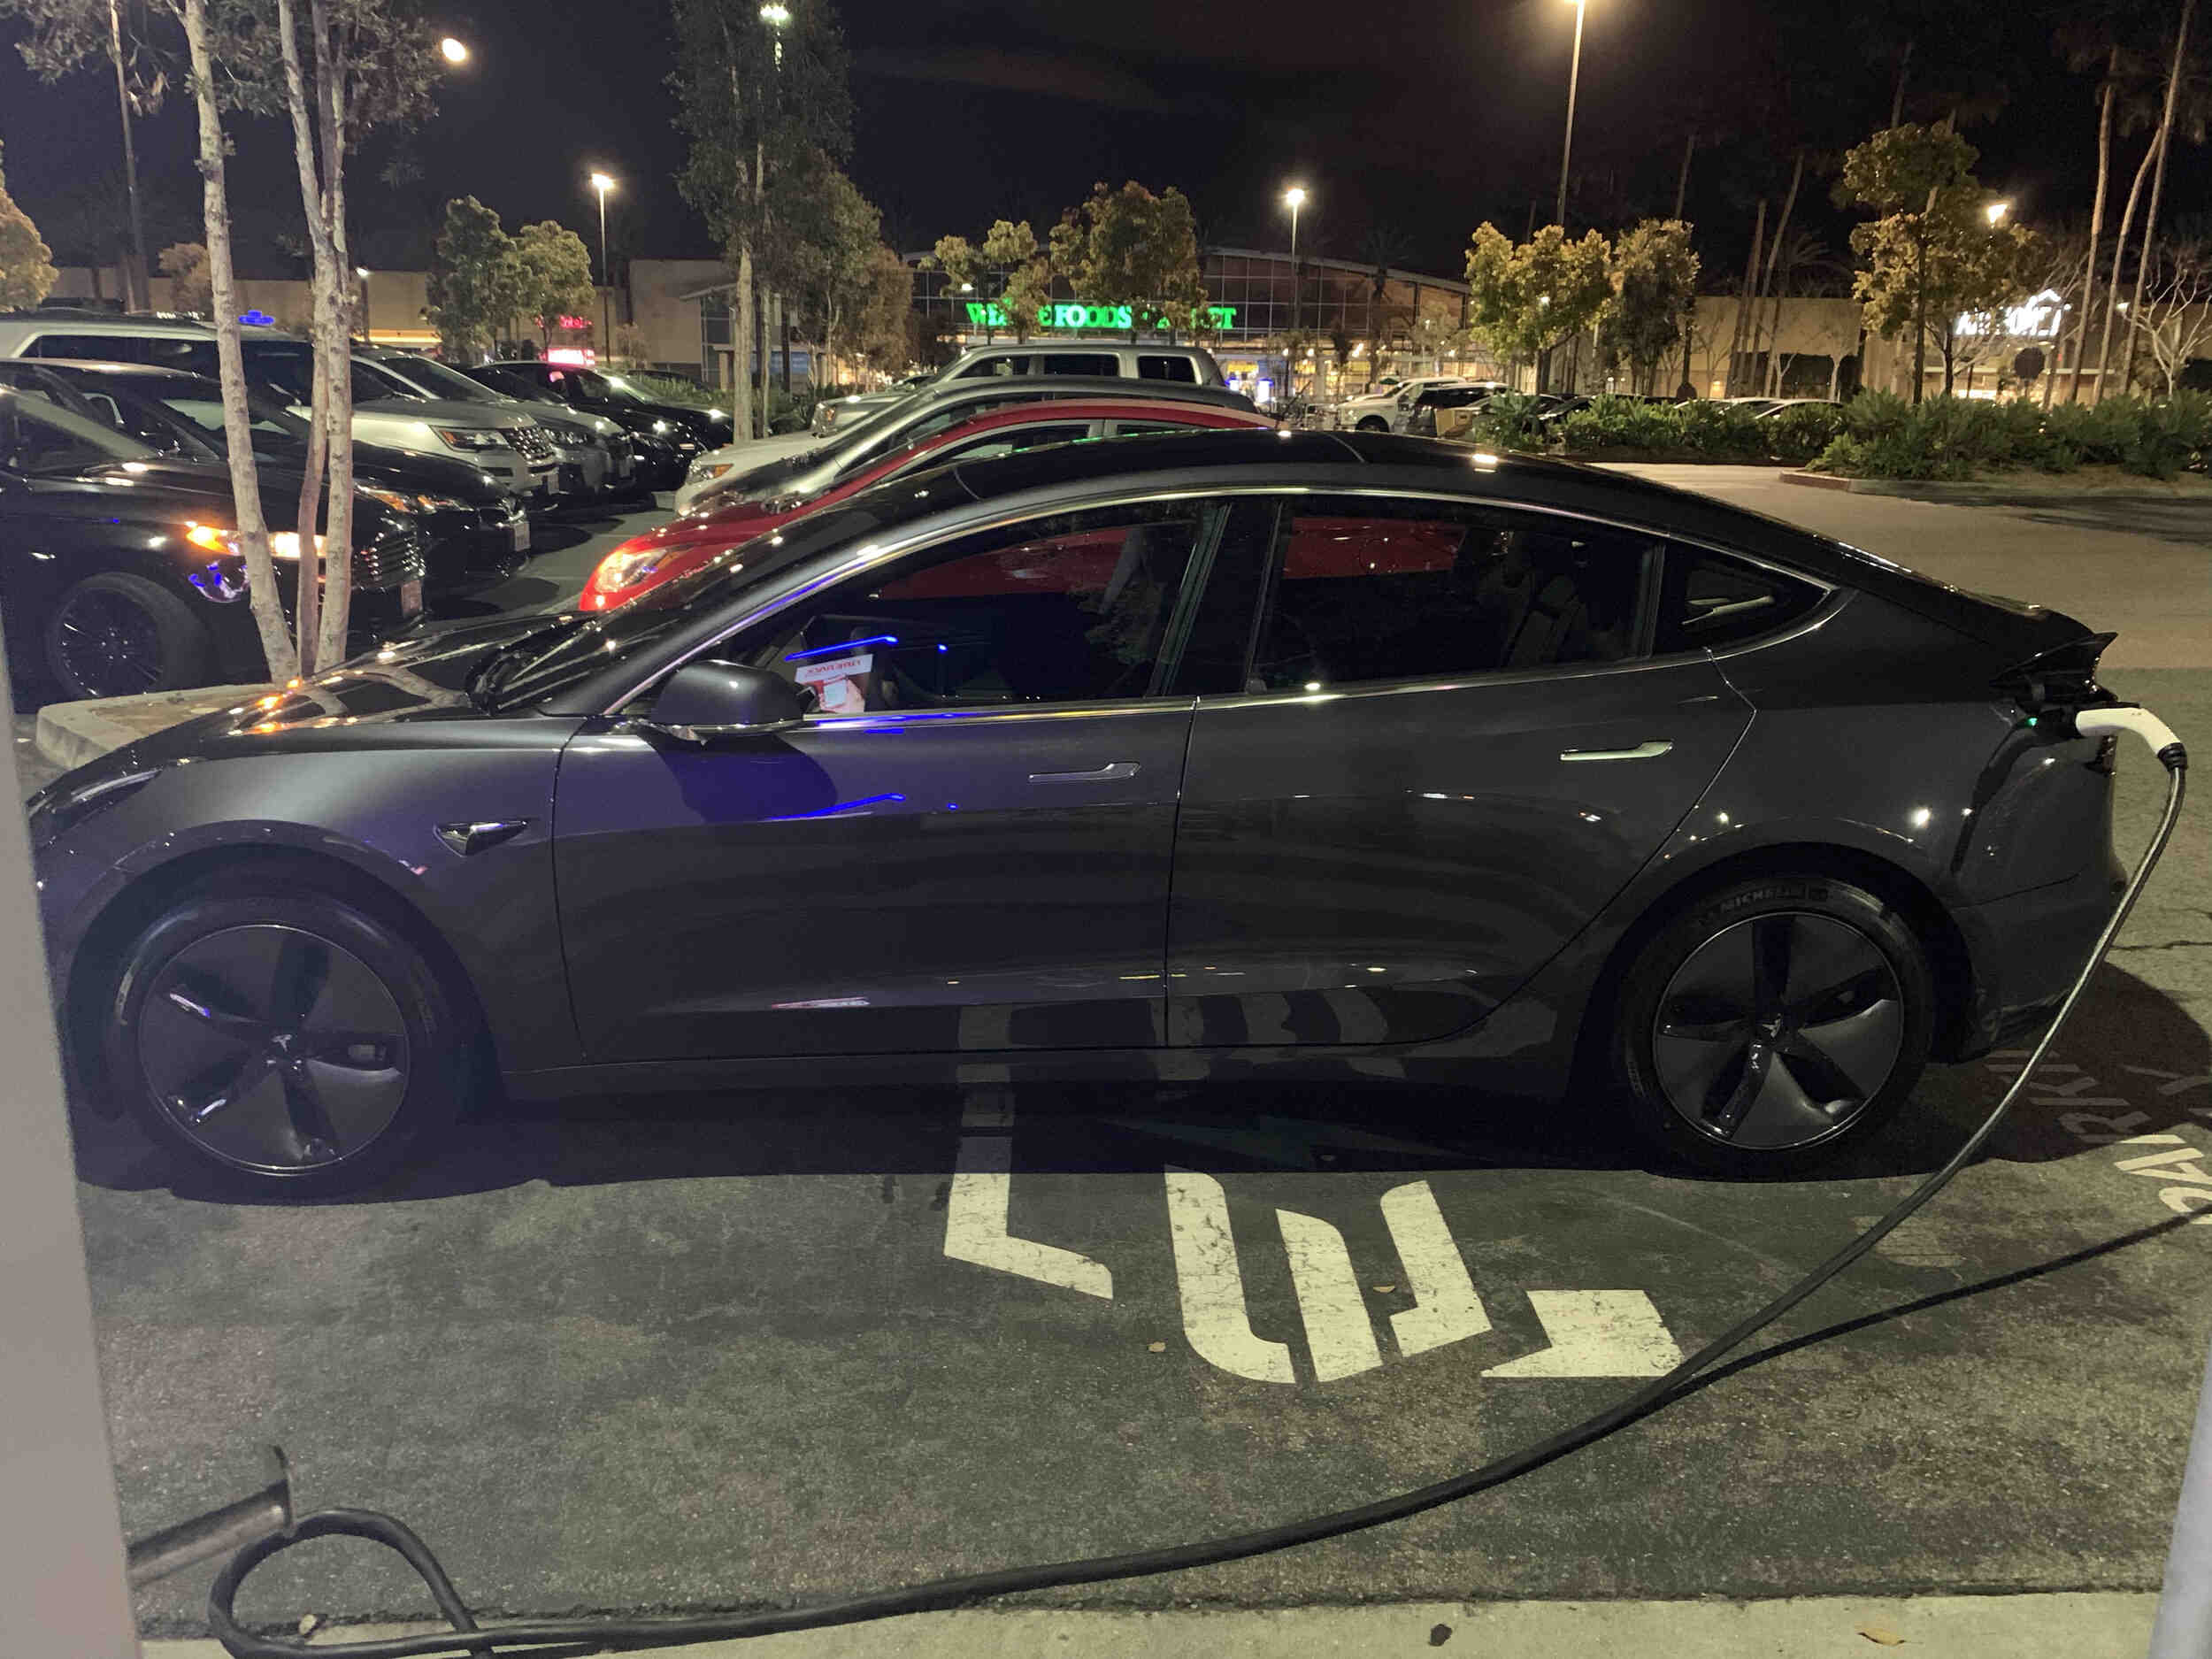 How do you charge a Tesla?